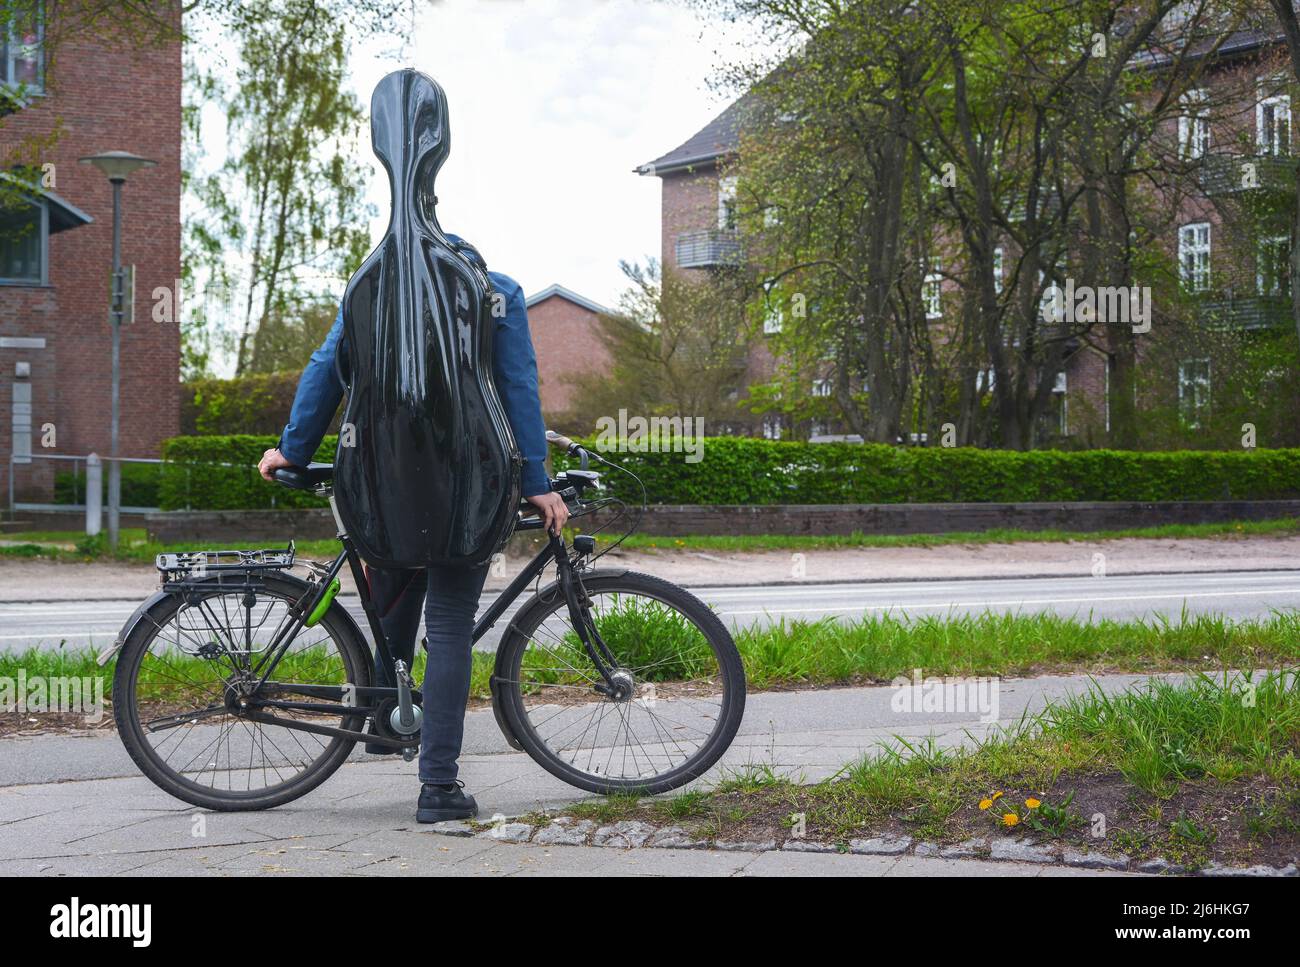 Der junge Musiker mit einem schwarzen Cellogehäuse auf dem Rücken steht mit seinem Fahrrad in einer Vorstadtstraße in einem Wohngebiet auf dem Weg zum Musikunterricht oder t Stockfoto